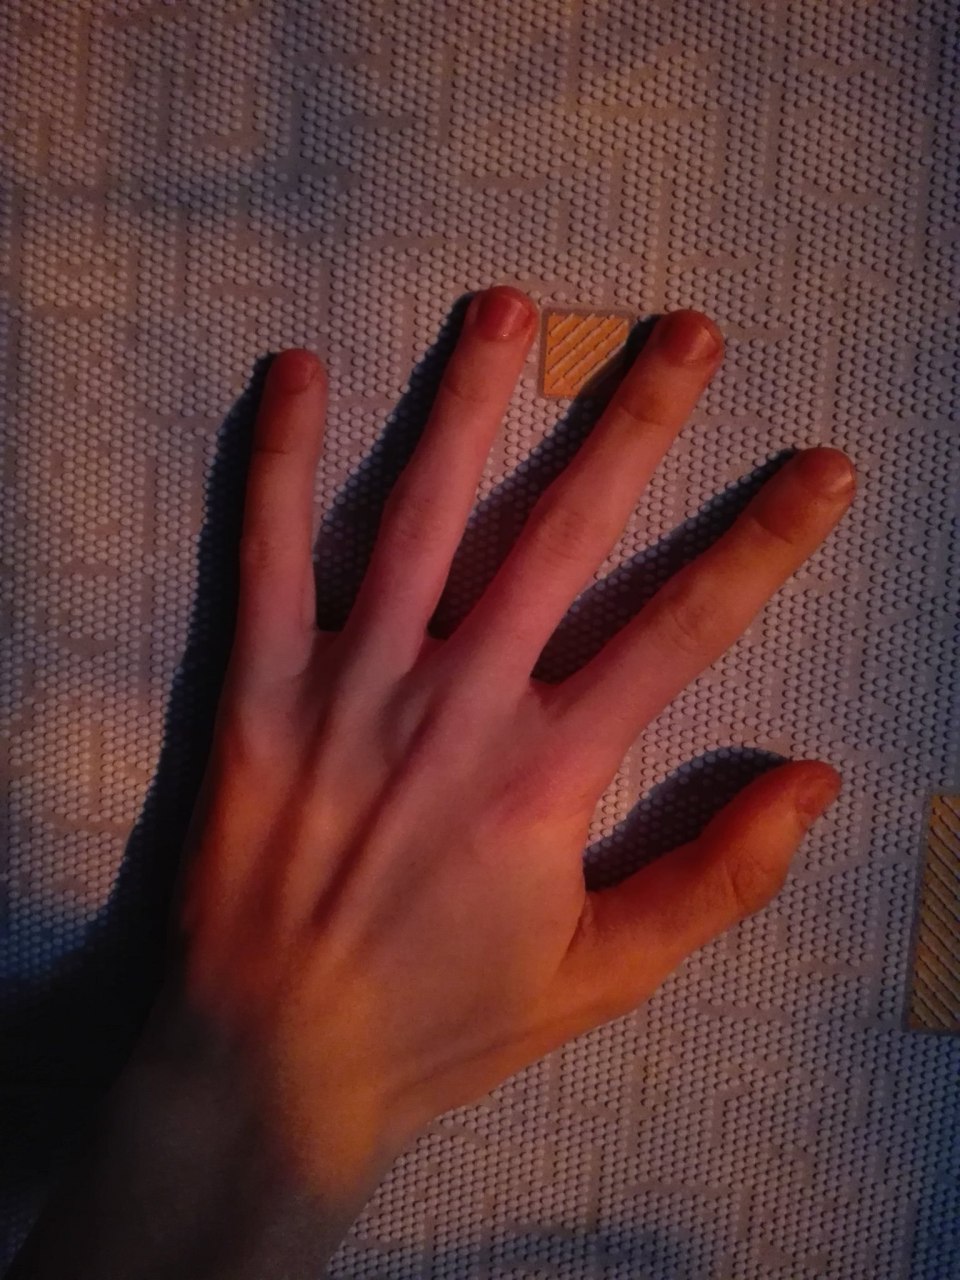 мужские руки домашние фото